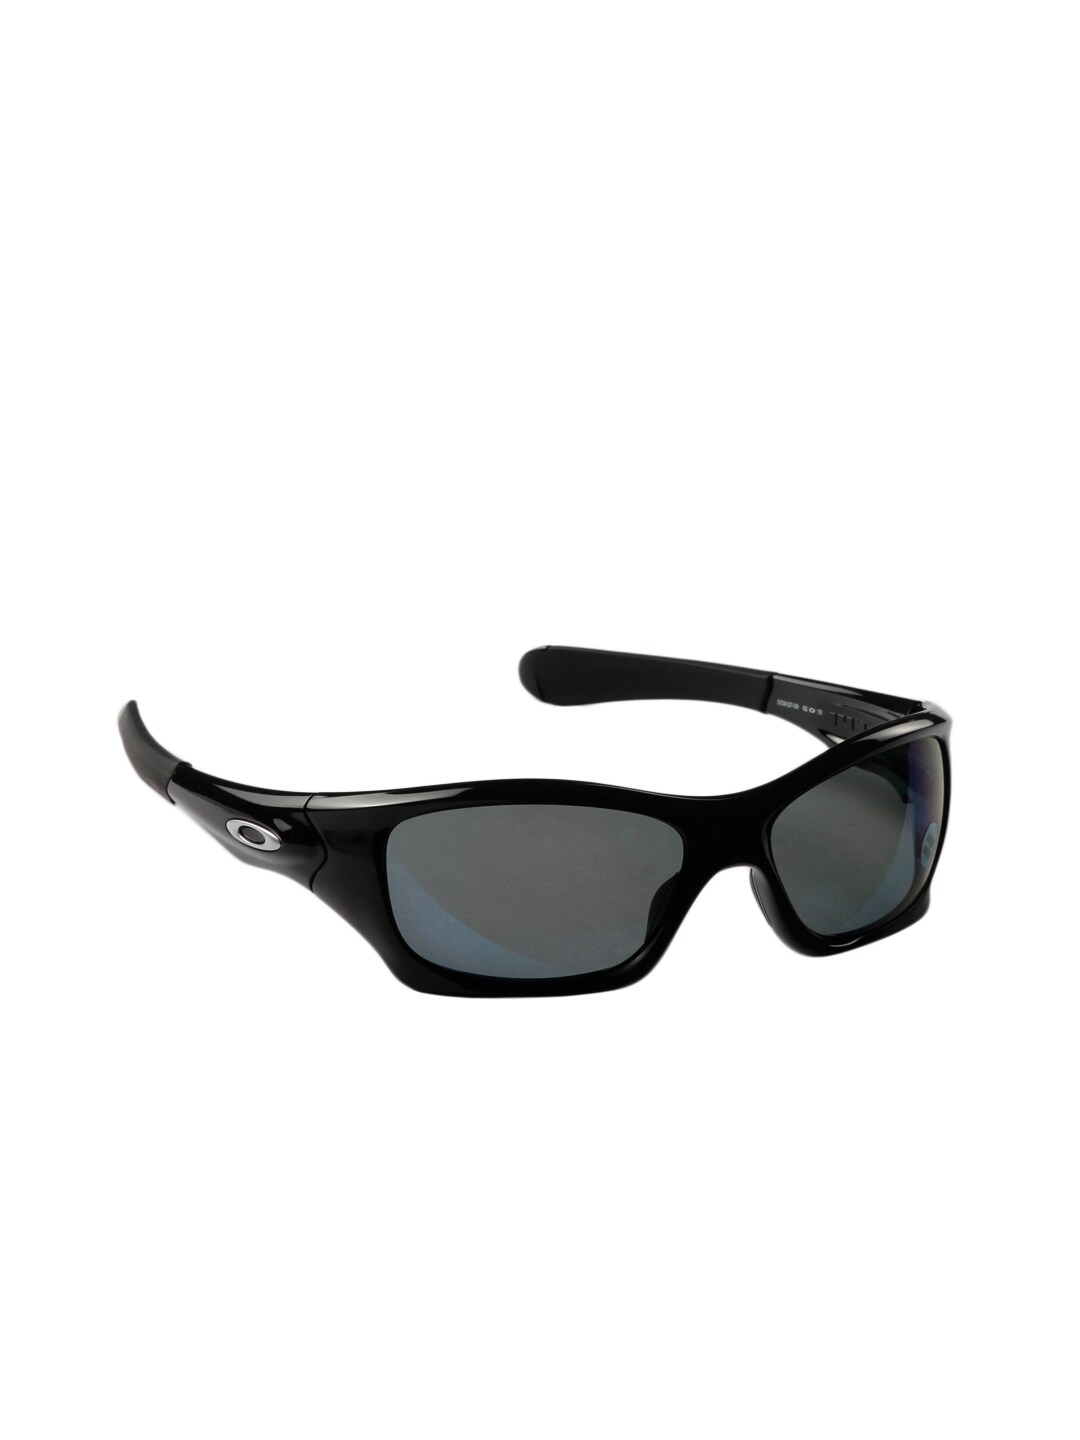 Oakley Men Pit Bull Black Sunglasses